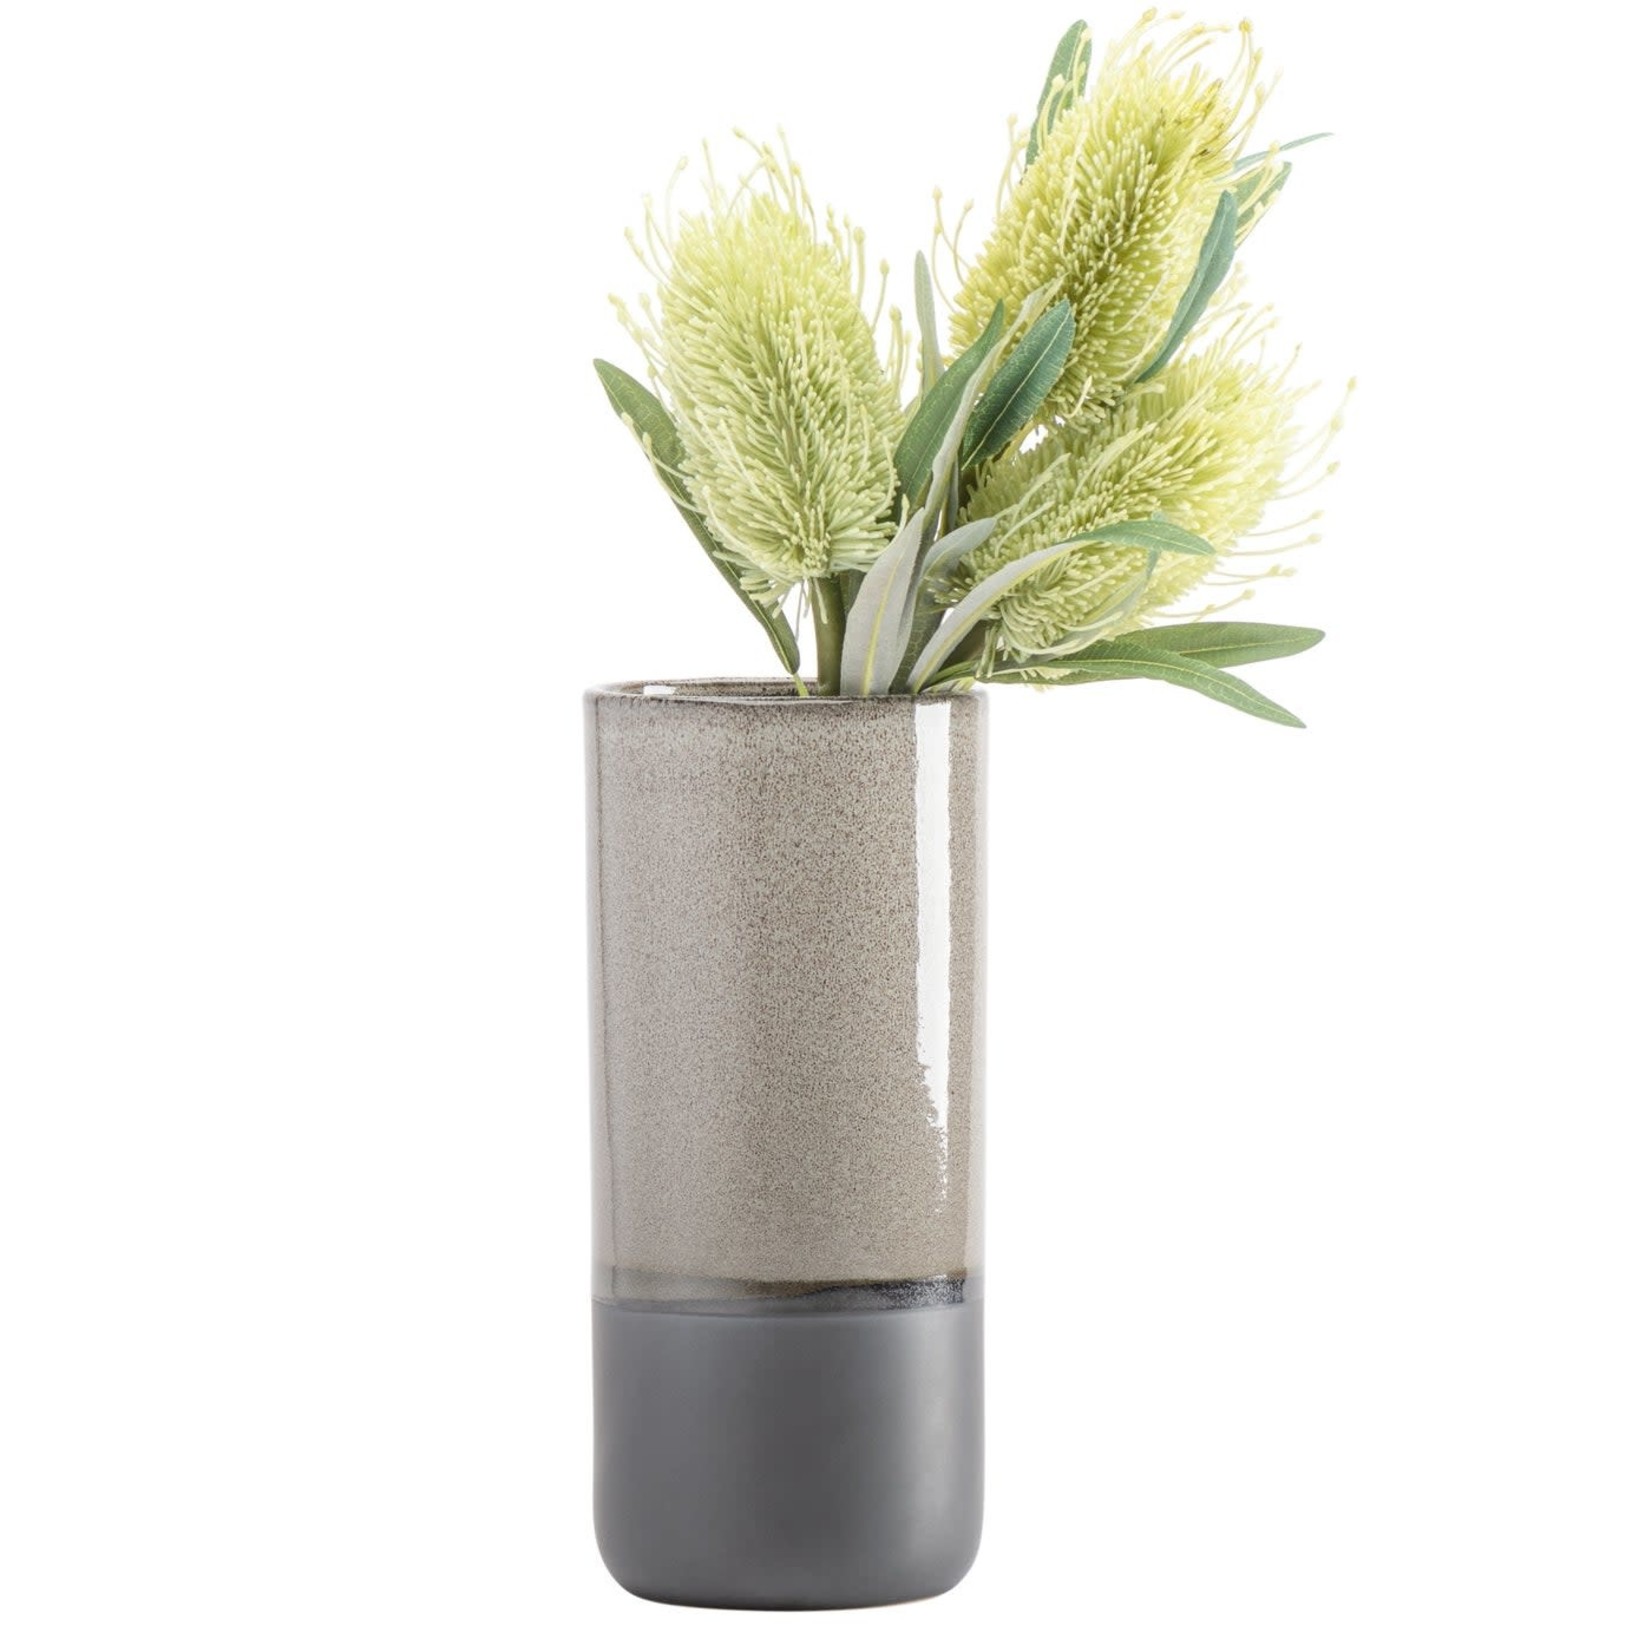 Torre & Tagus Tolo 2 Tone Grey Ceramic Vase - 11.5"